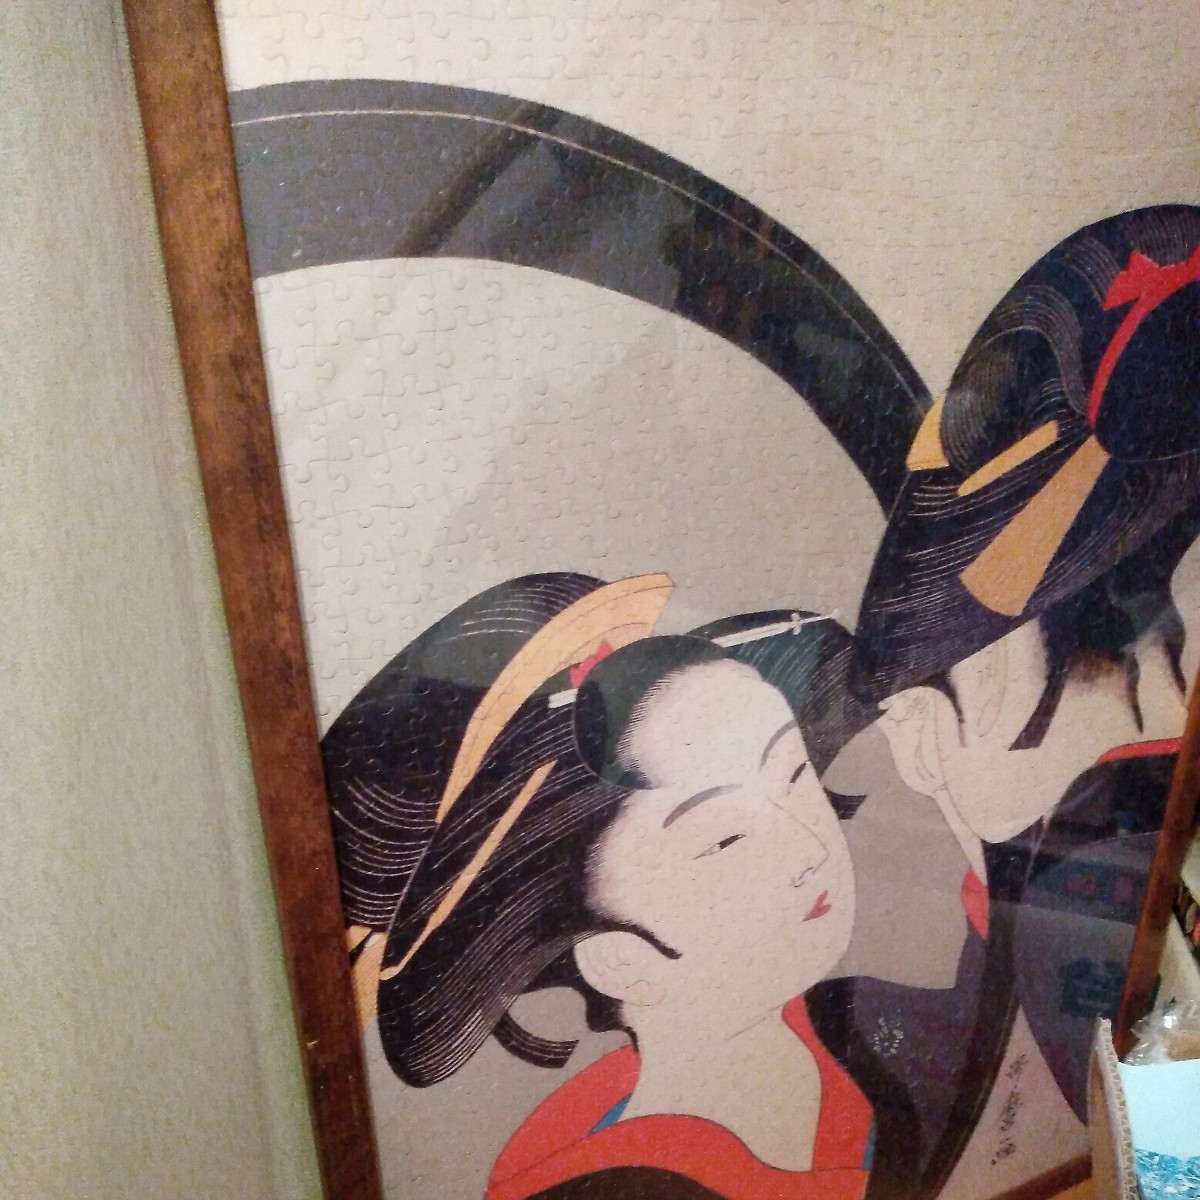 Ukiyo-e-Gemälde von schönen Frauen, Utamaro: Puzzle, und noch eins: Echte Floats, Malerei, Ukiyo-e, drucken, Schöne Frau malt